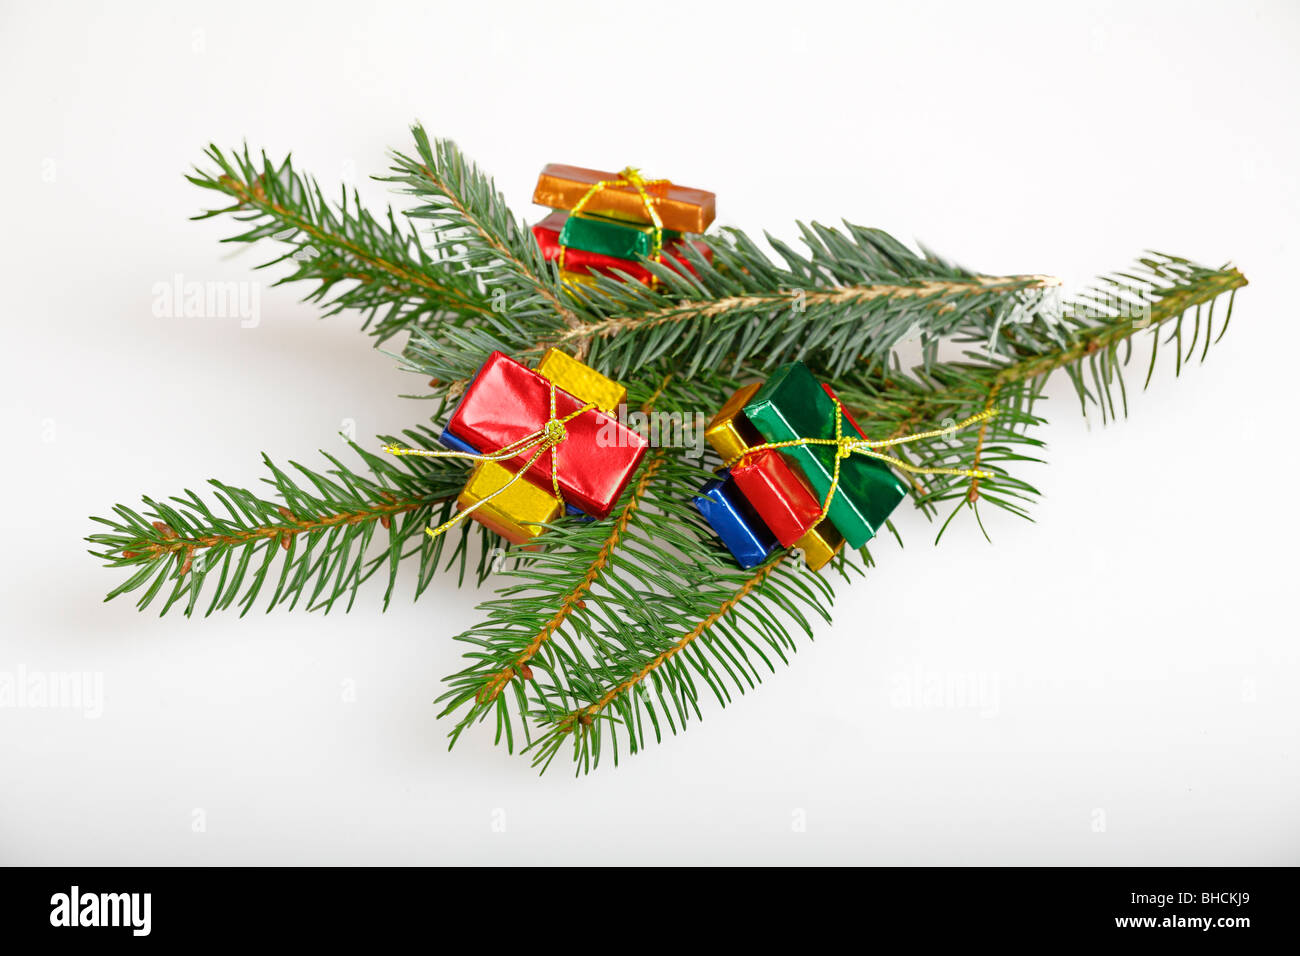 Weihnachts-Dekoration mit Tannenzweig und bunten kleinen Schokoladen Pakete  Stockfotografie - Alamy